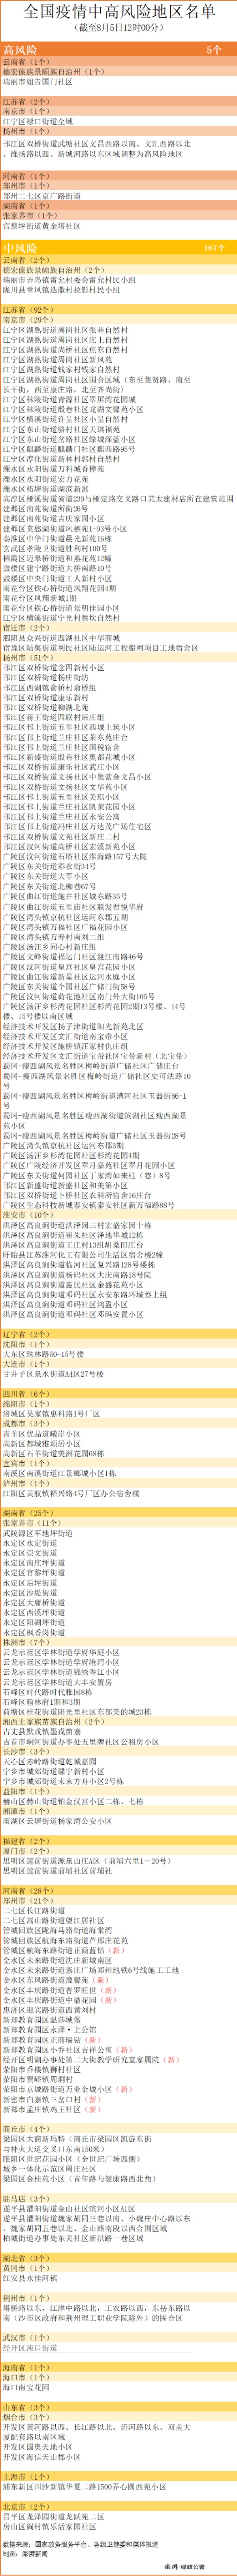 中风险区南京-2郑州+10全国中高风险区167+5个